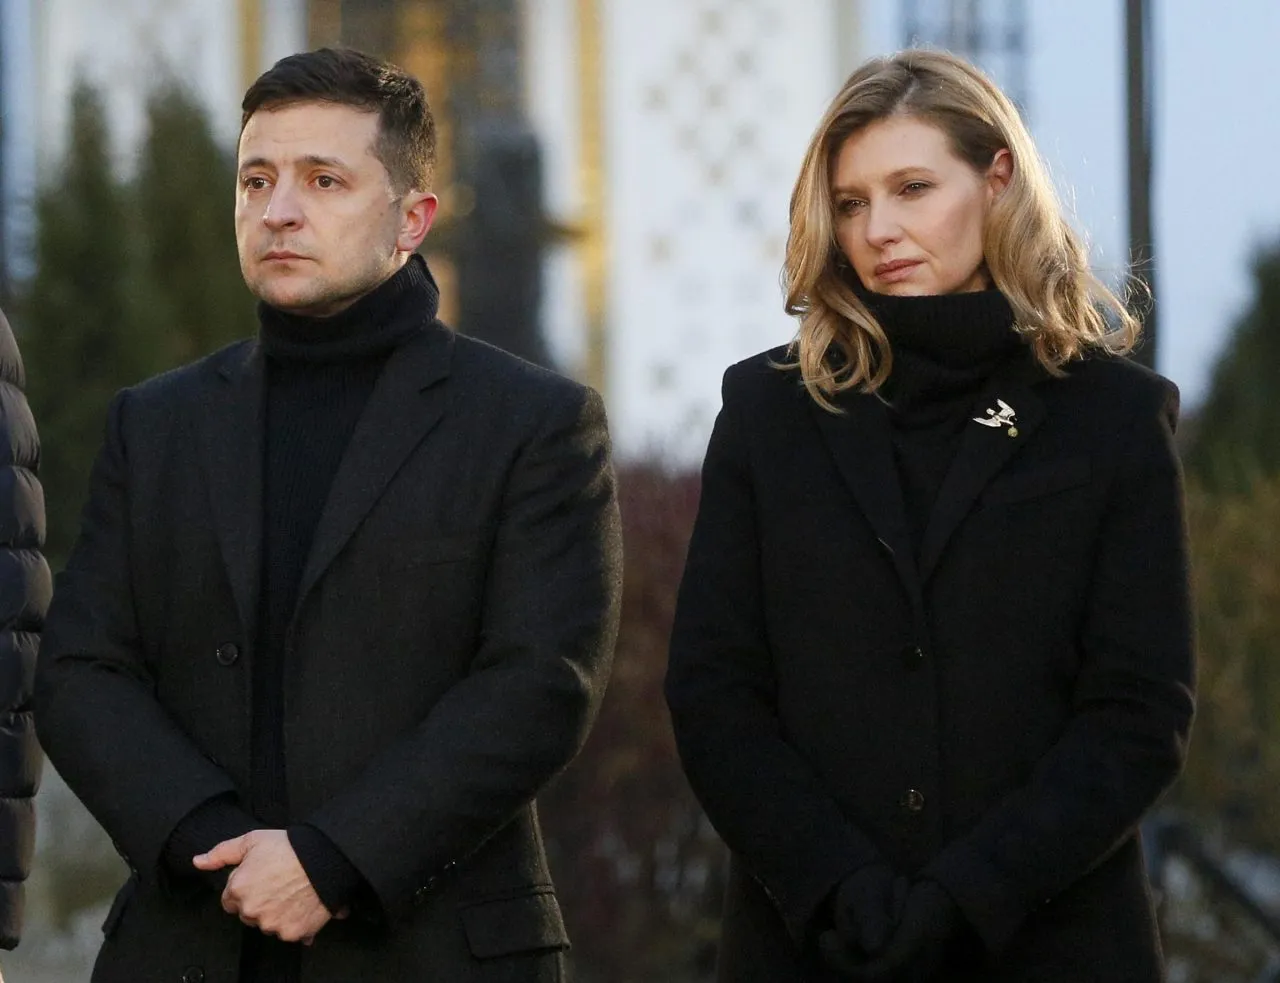 Zelensky e la moglie Olena scioccati per lo schianto dell'elicottero: "Dolore indicibile, indagini subito"